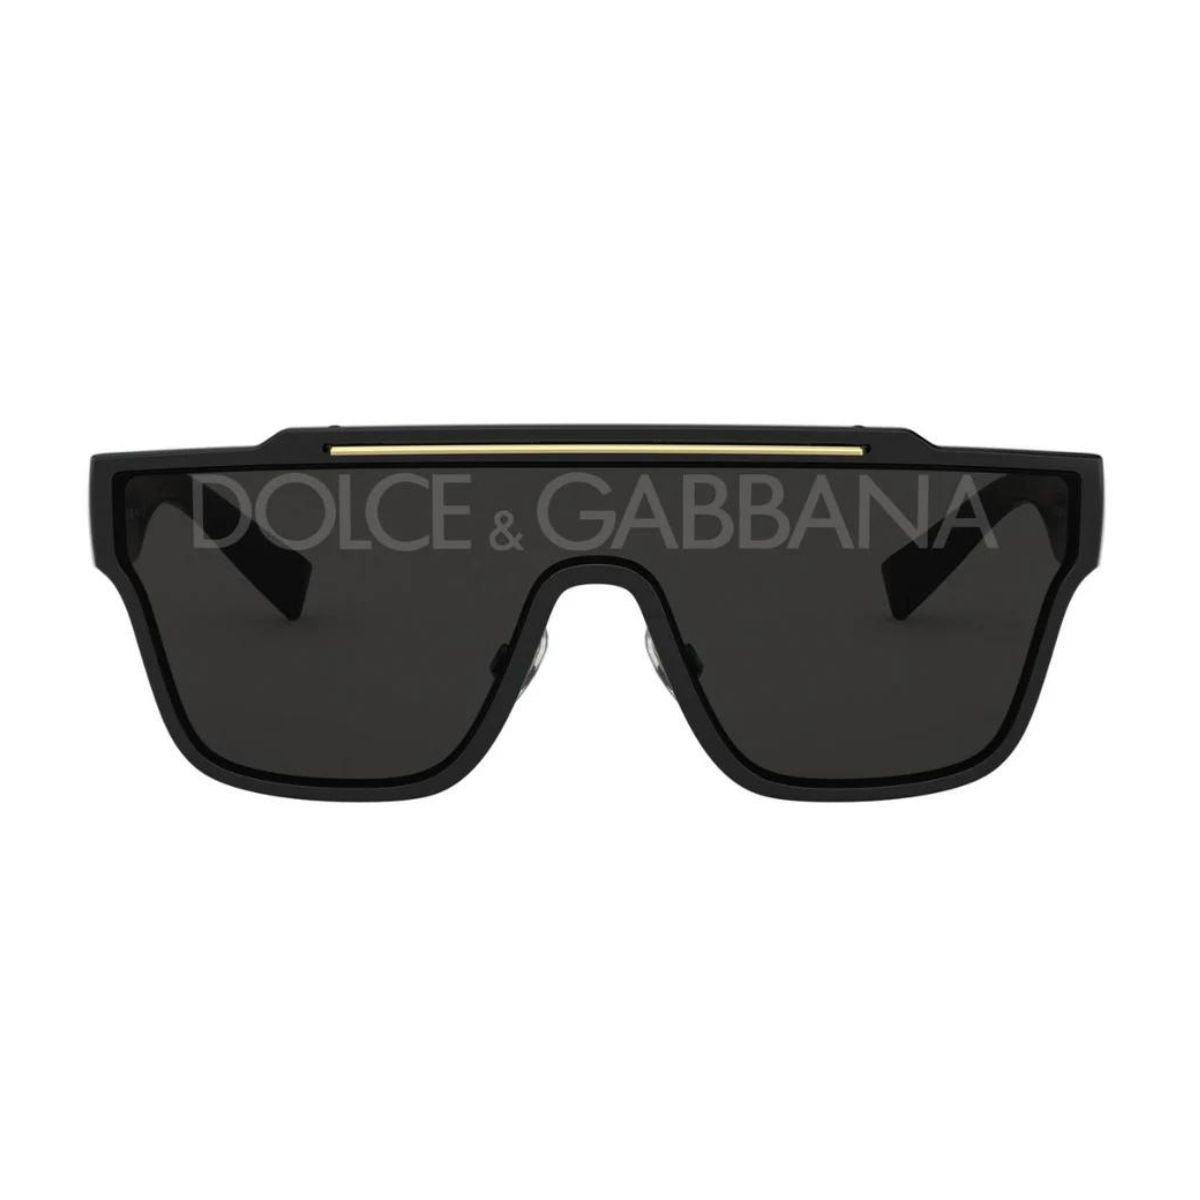 " Shop Dolce & Gabbana DG 6125 501/M Wayfarer Sunglass For Men's Online At Optorium"